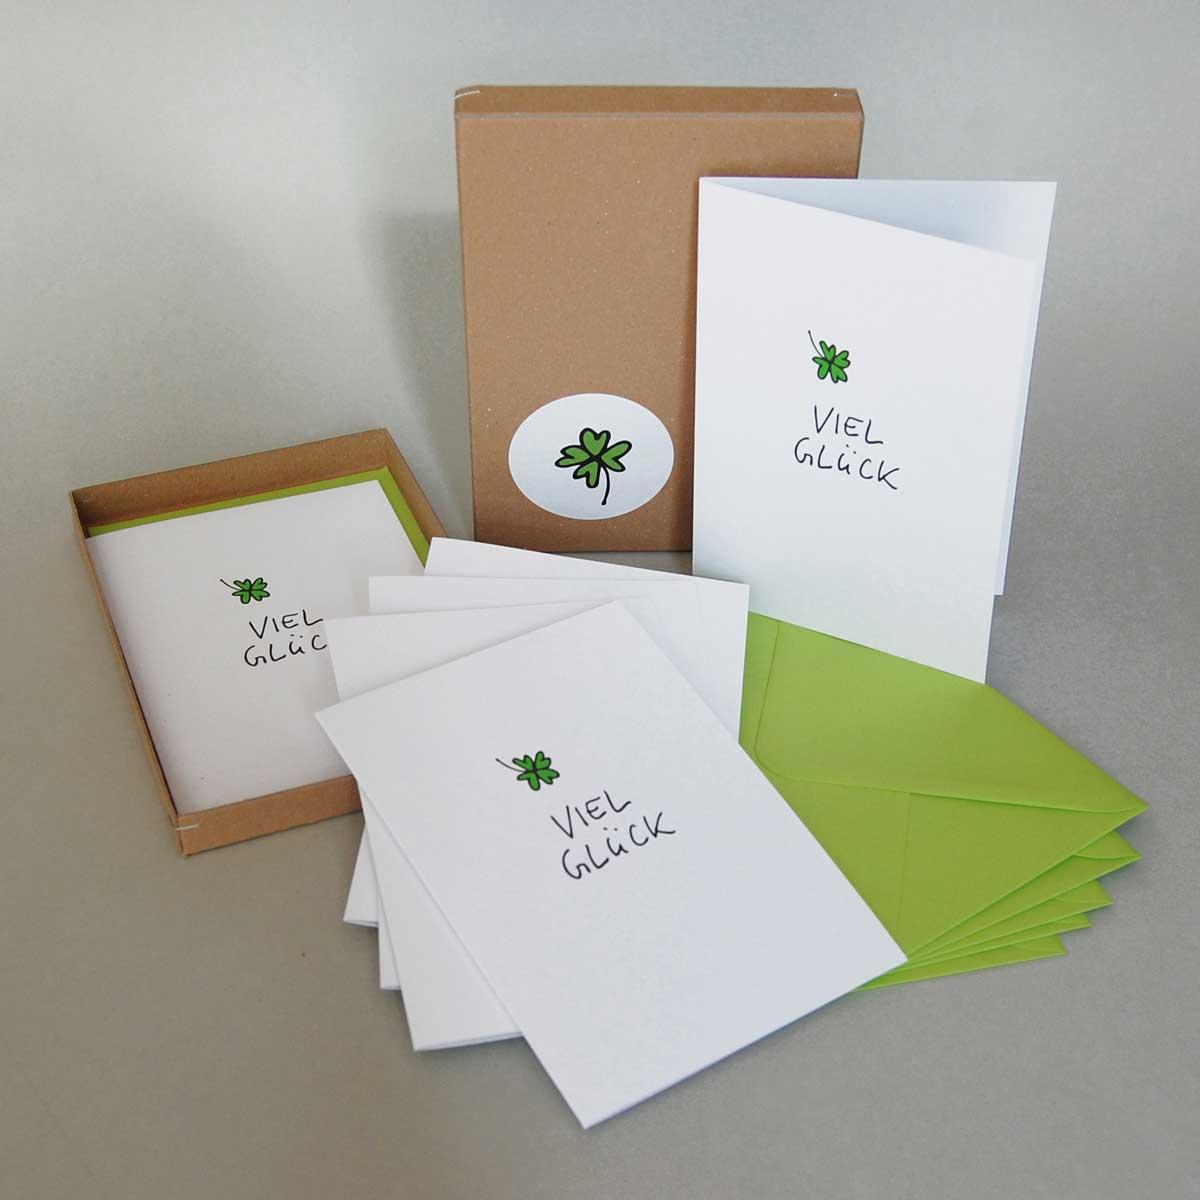 Viel Glück - Geschenkbox mit sechs Recyclingglückwunschkarten